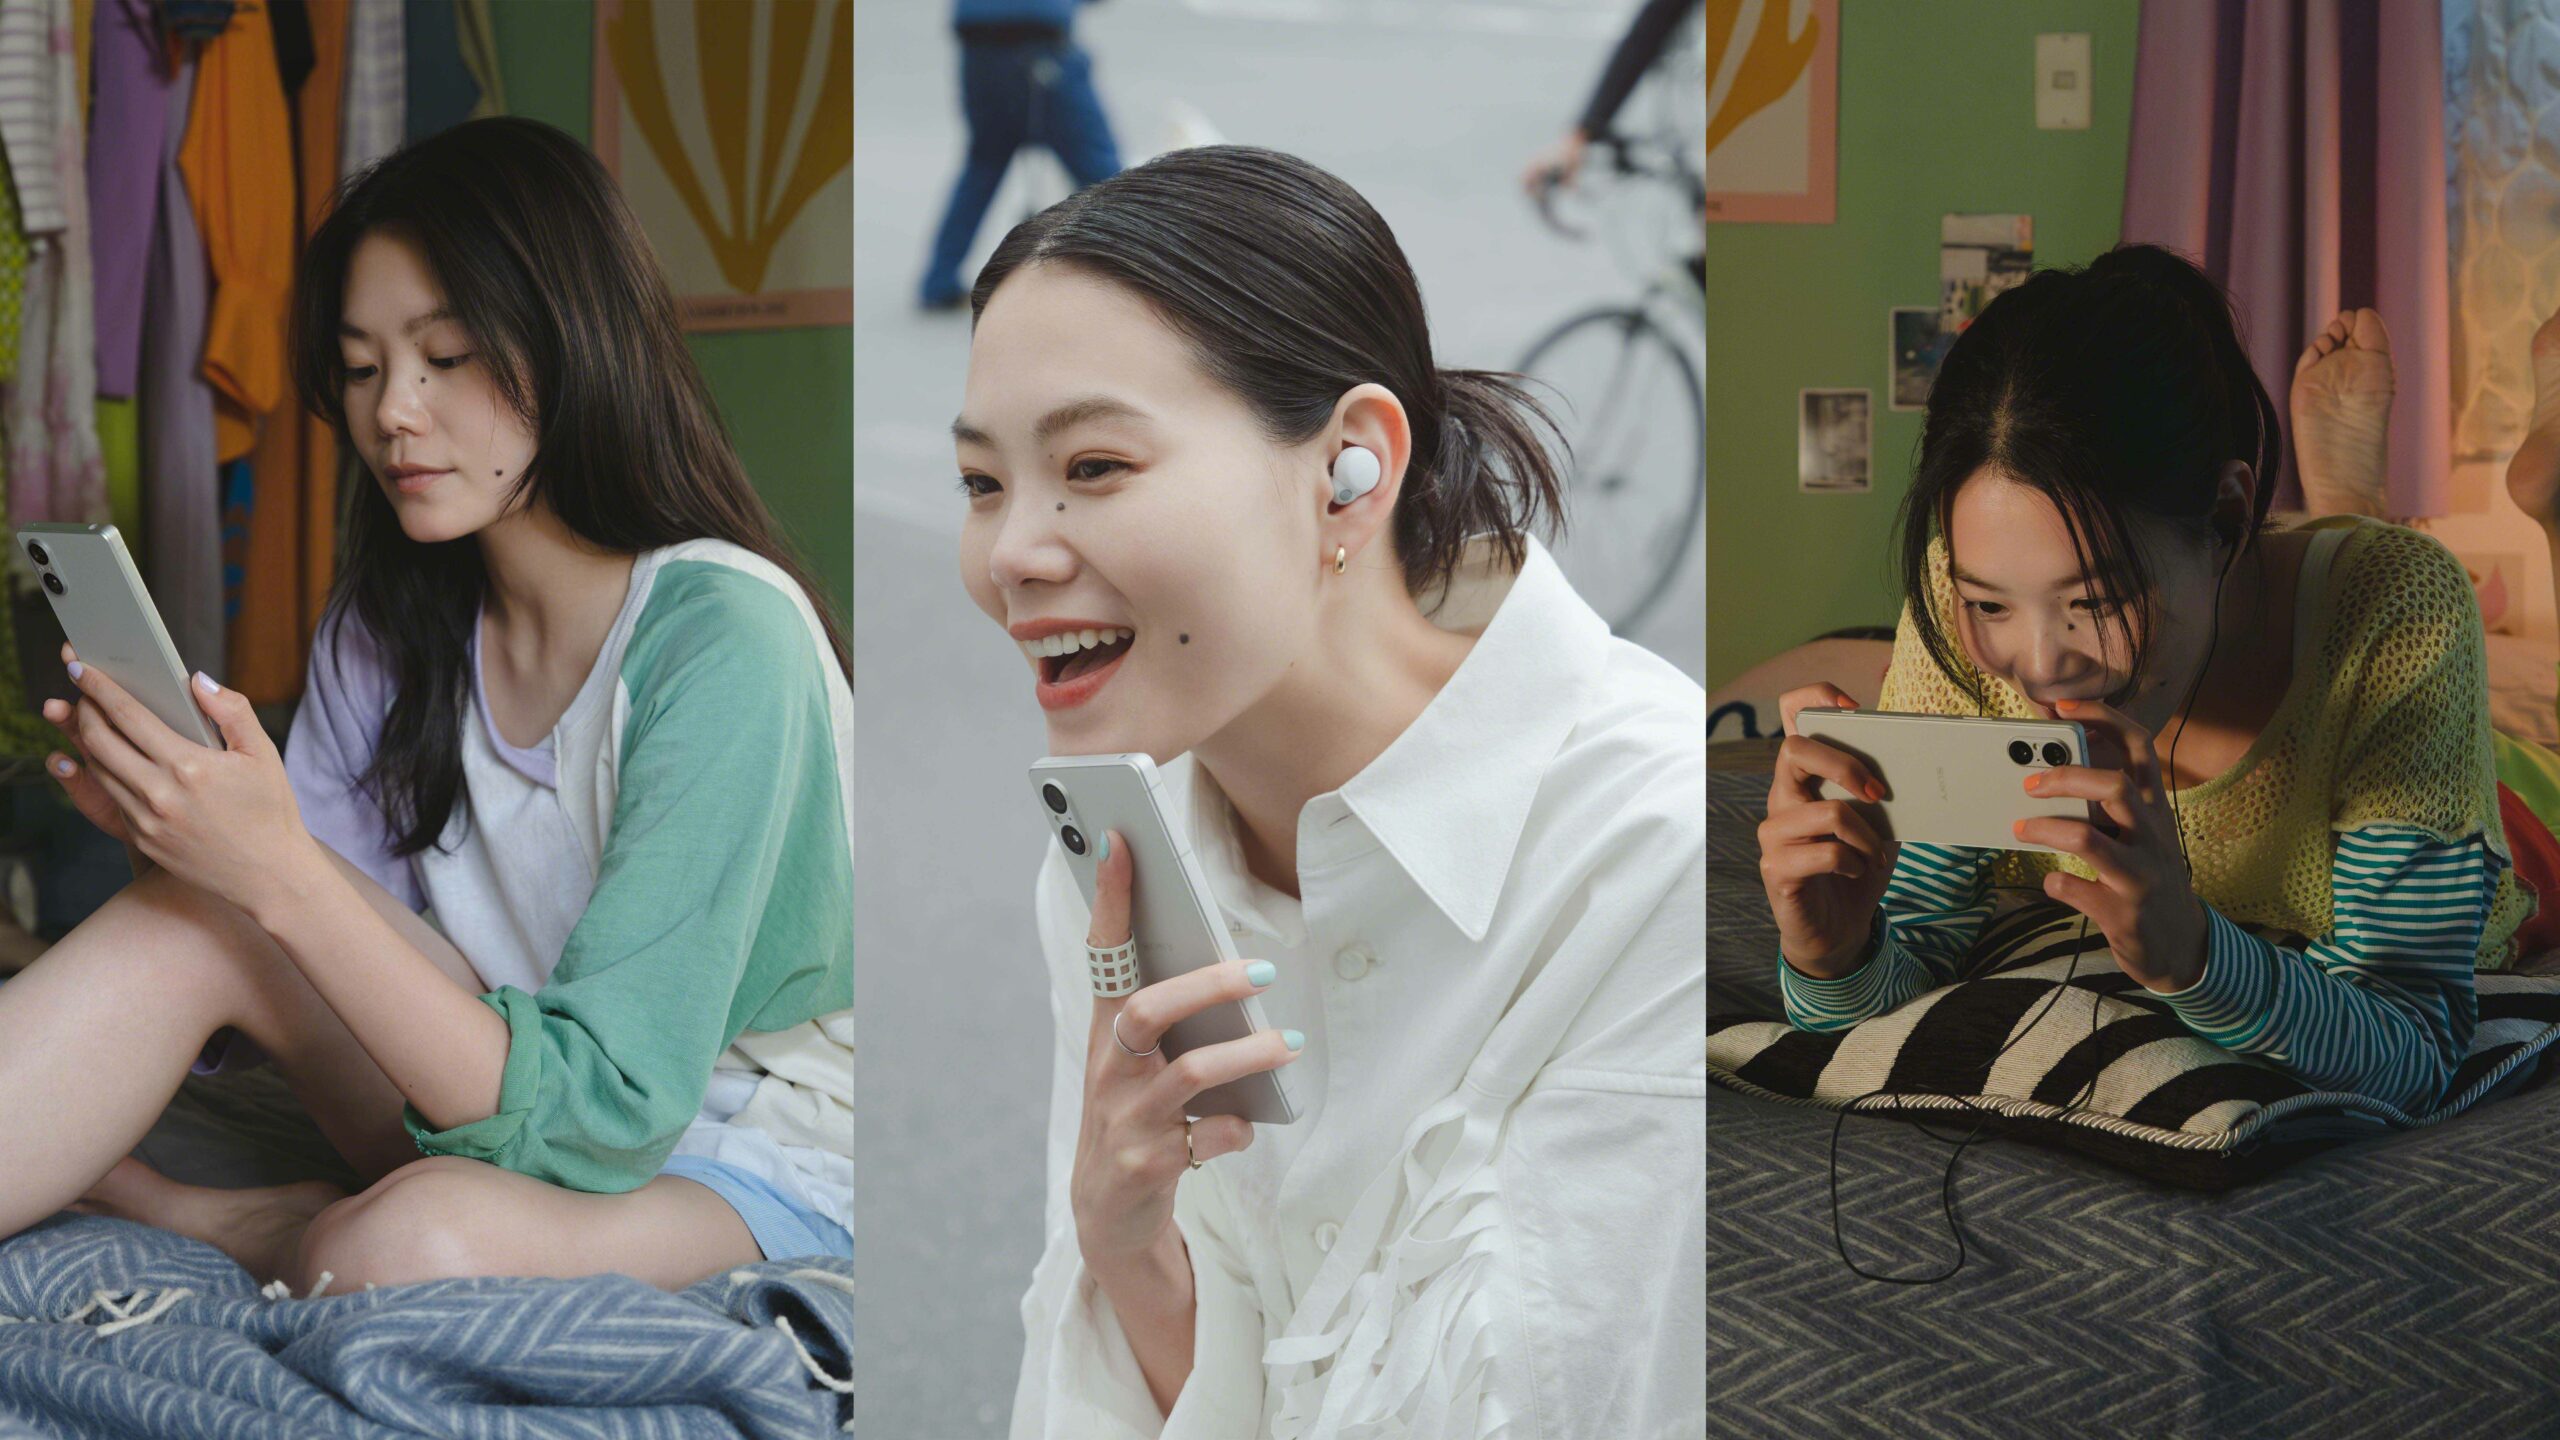 Sony 發表全新合手旗艦智慧手機 Xperia 5 V 全新影片製作器 1 分鐘快速出片 Fun 手創作即刻分享 @3C 達人廖阿輝